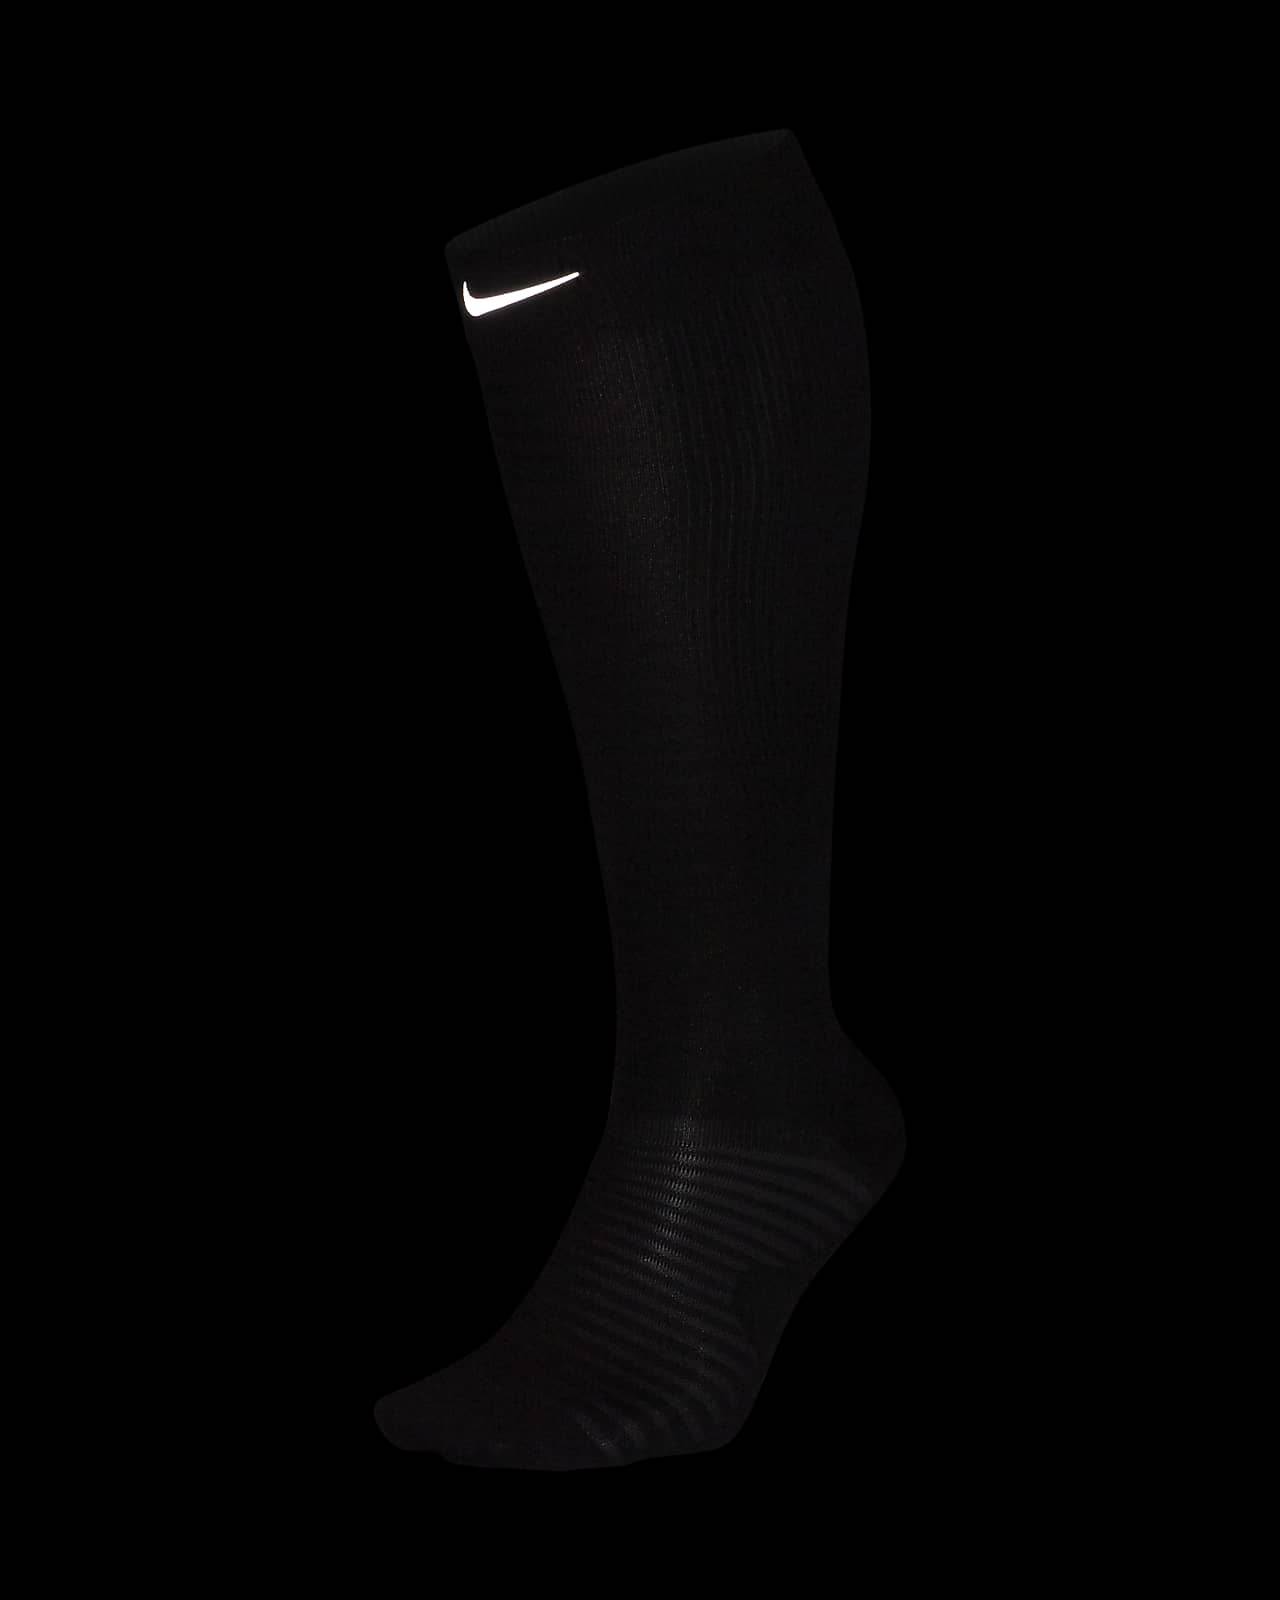 Calcetines hasta la rodilla running con compresión Nike Spark Lightweight. Nike.com